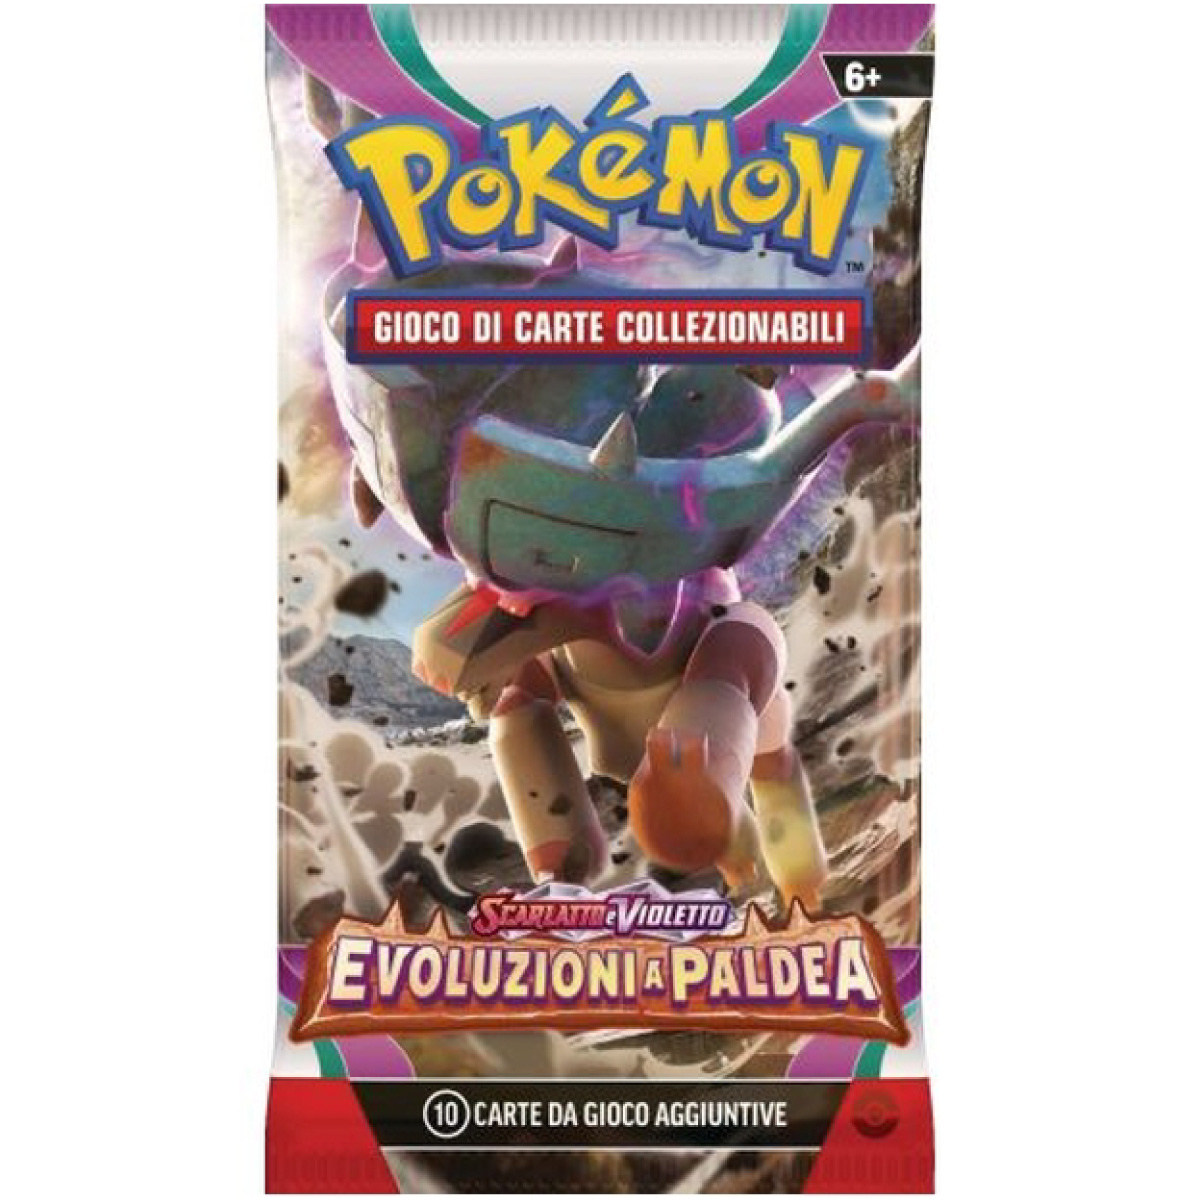 pokemon gcc - pokemon scarlatto e violetto evoluzioni a paldea - box 36 bustine (ita) - pk61331